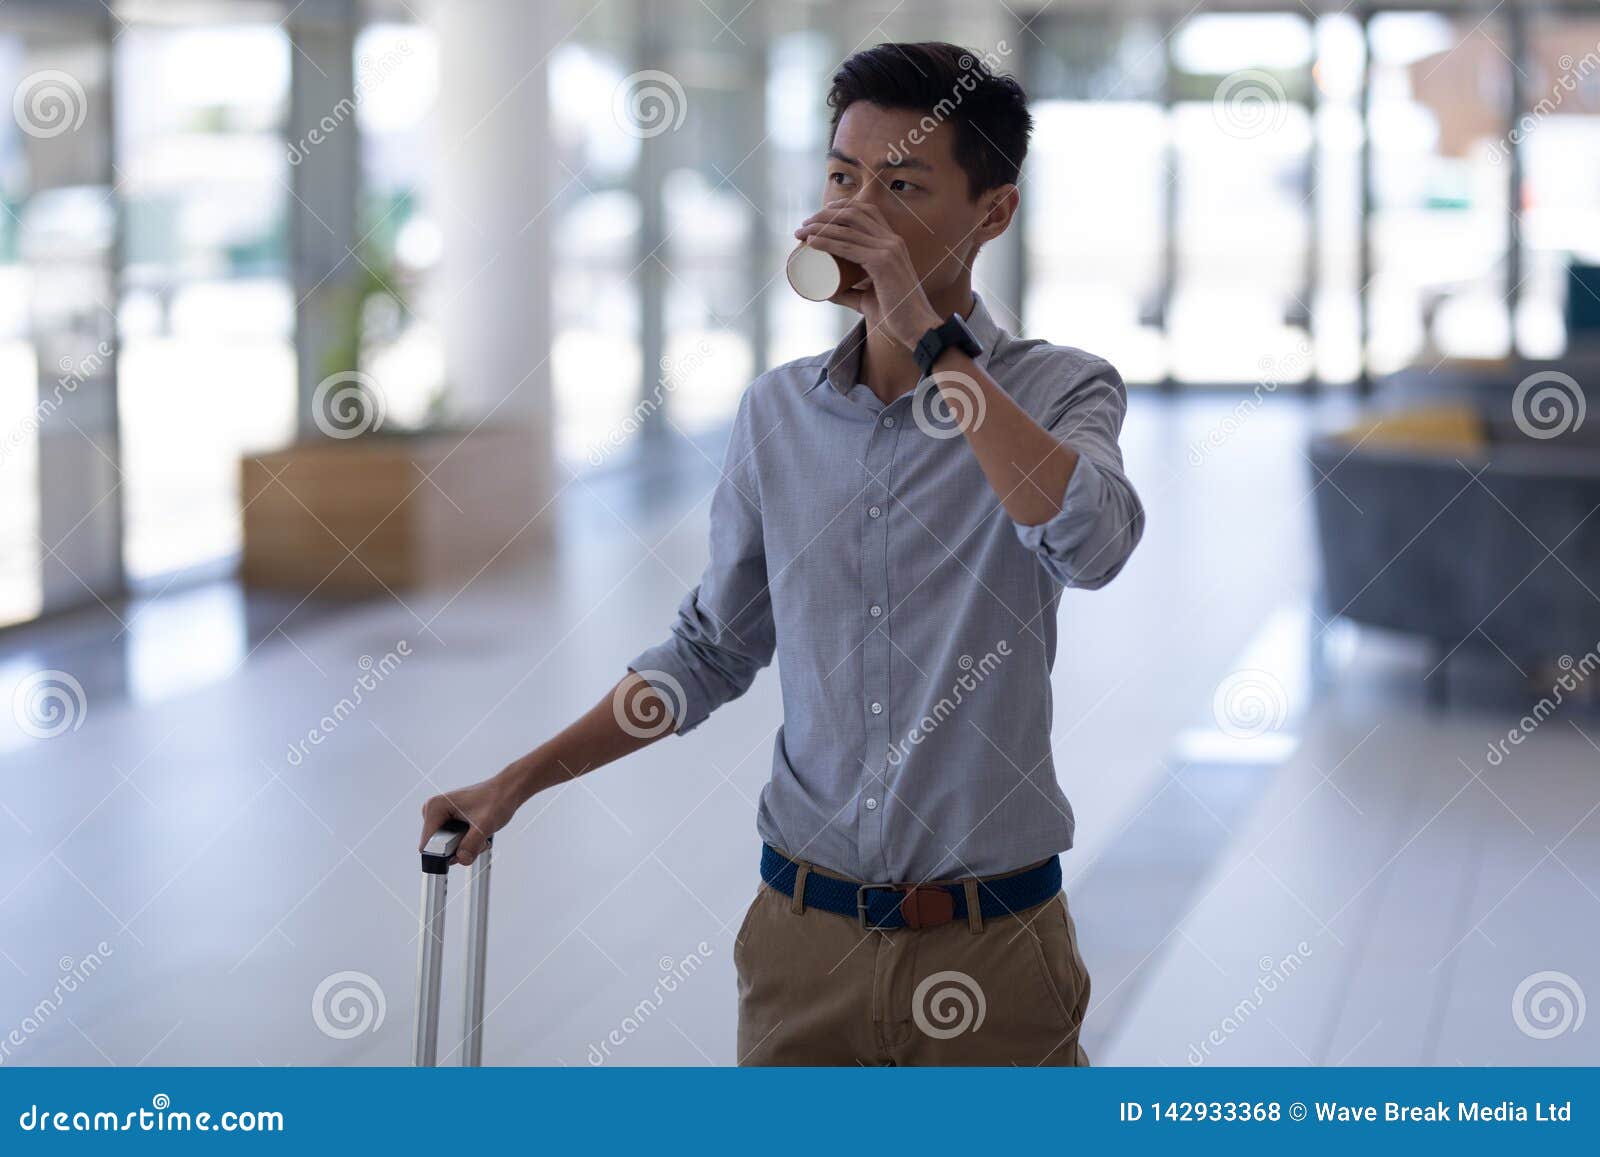 Asiatisk manlig ledare som har kaffe, medan gå med bagage i lobbyen. Främre sikt av den unga asiatiska manliga ledaren som har kaffe, medan gå med bagage i lobbyen på kontoret Han tänker